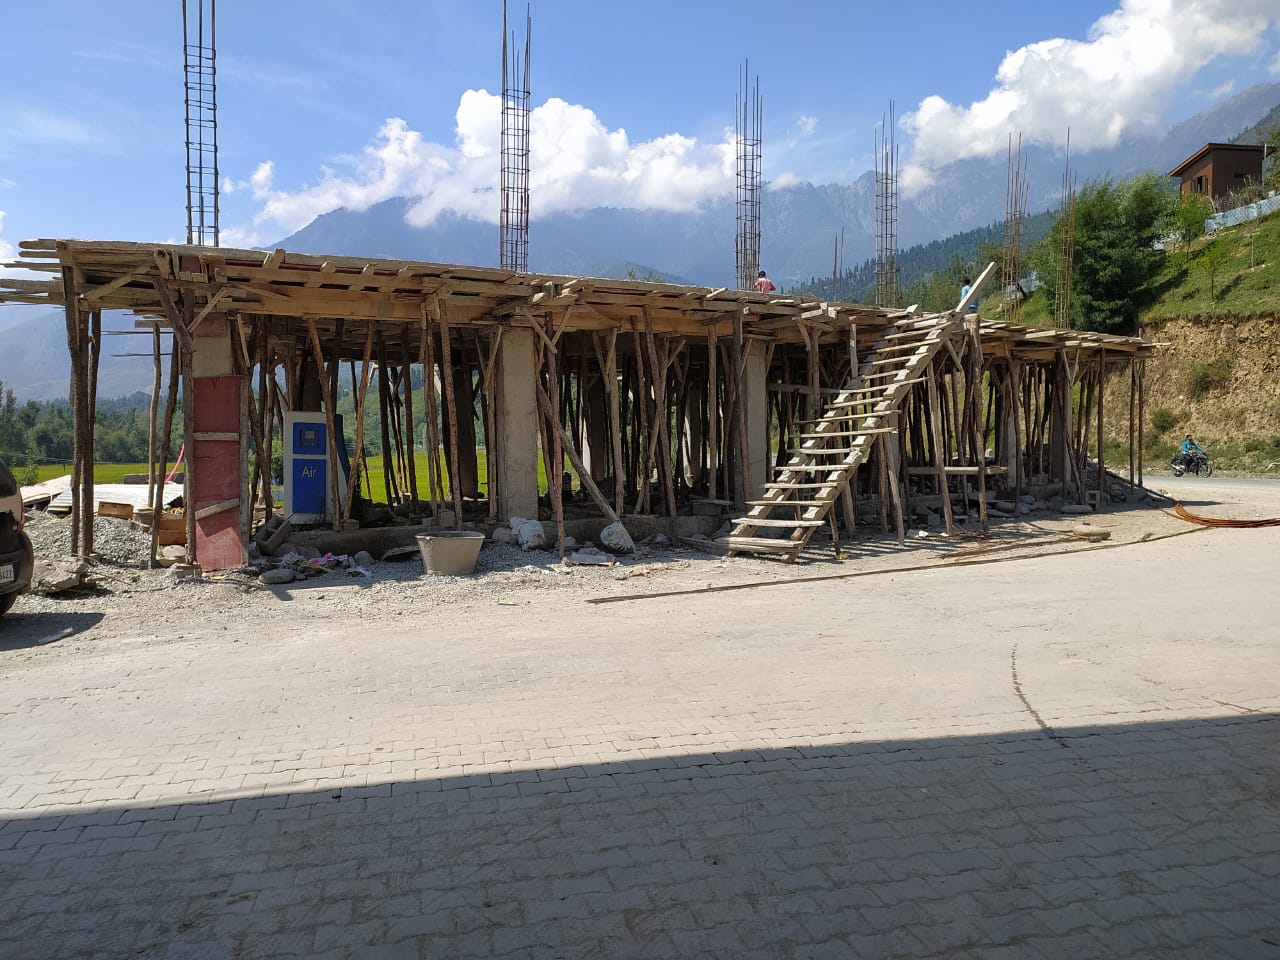 श्रीनगर-लेह राजमार्ग के साथ अवैध निर्माण का कोई अंत नहीं, राजस्व विभाग कहीं नहीं दिखता